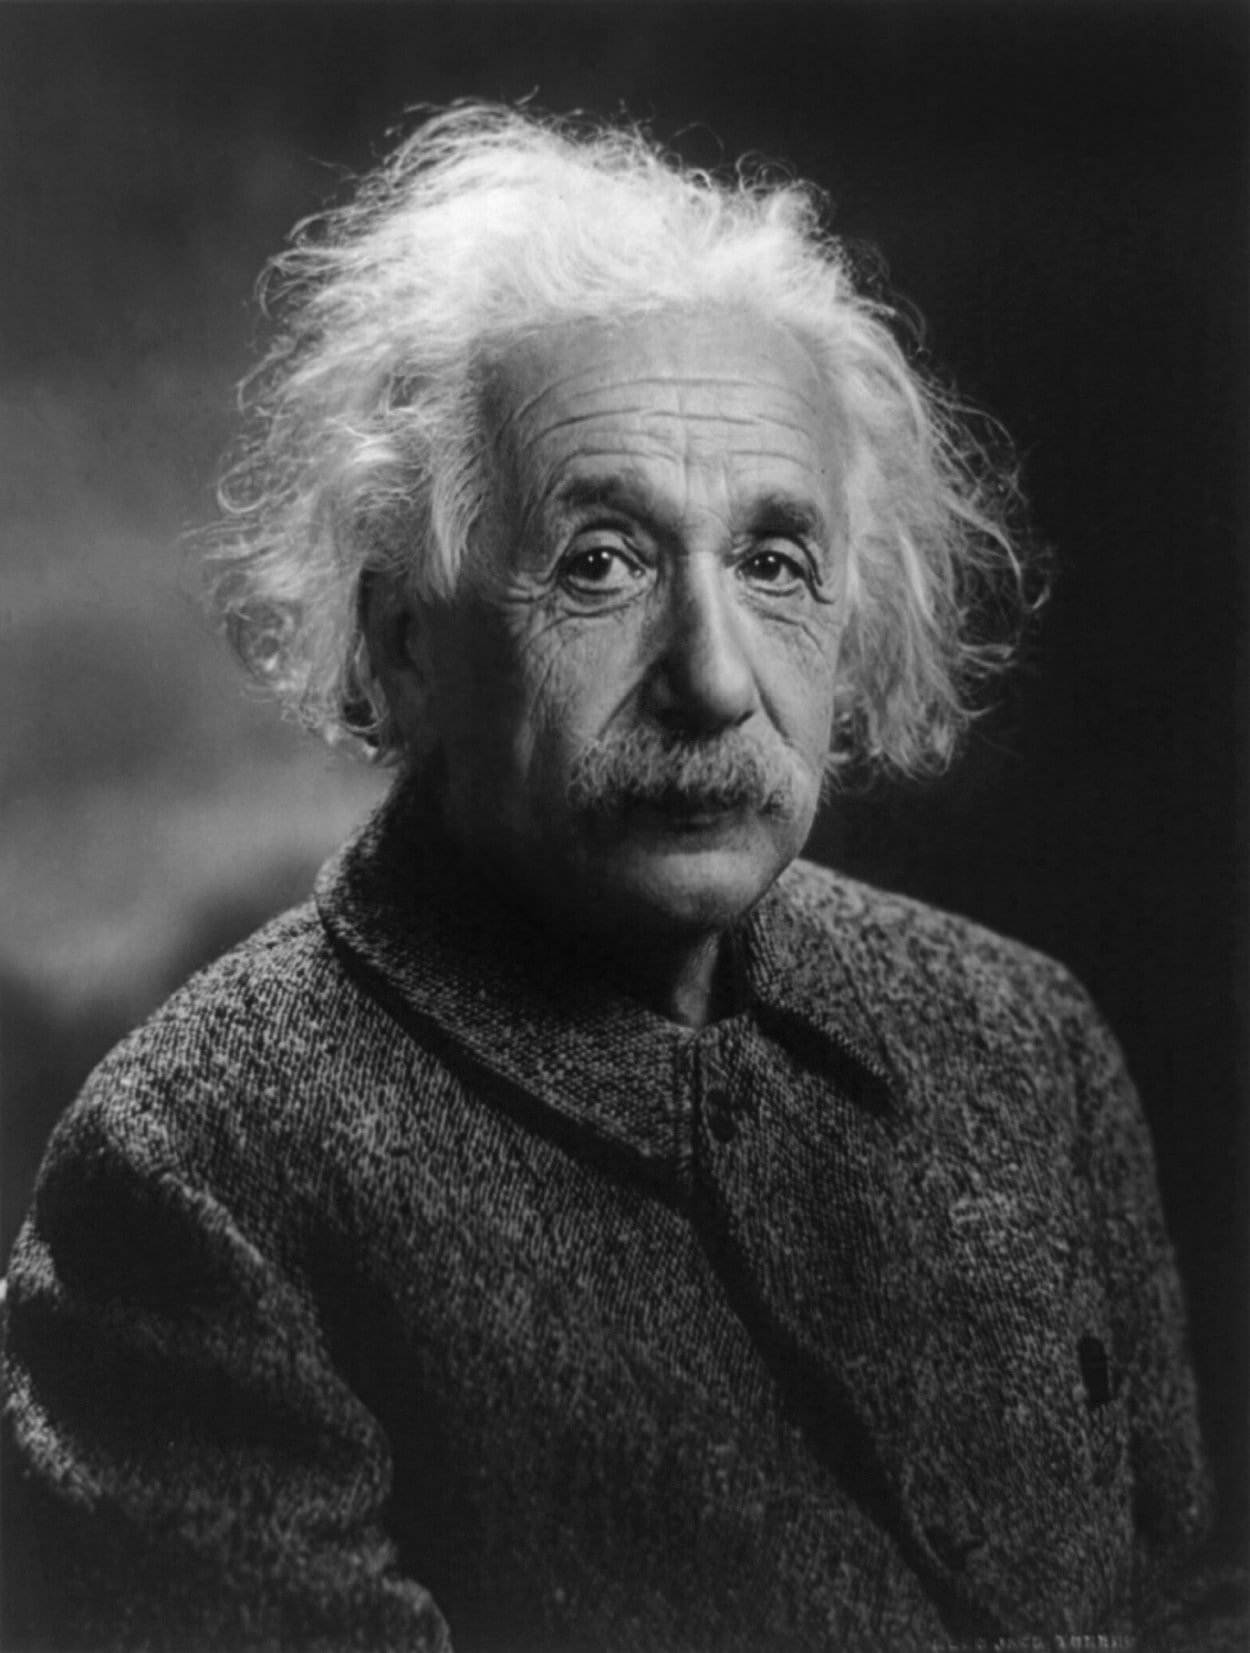 Albert Einstein, monochrome, men, old people, portrait display